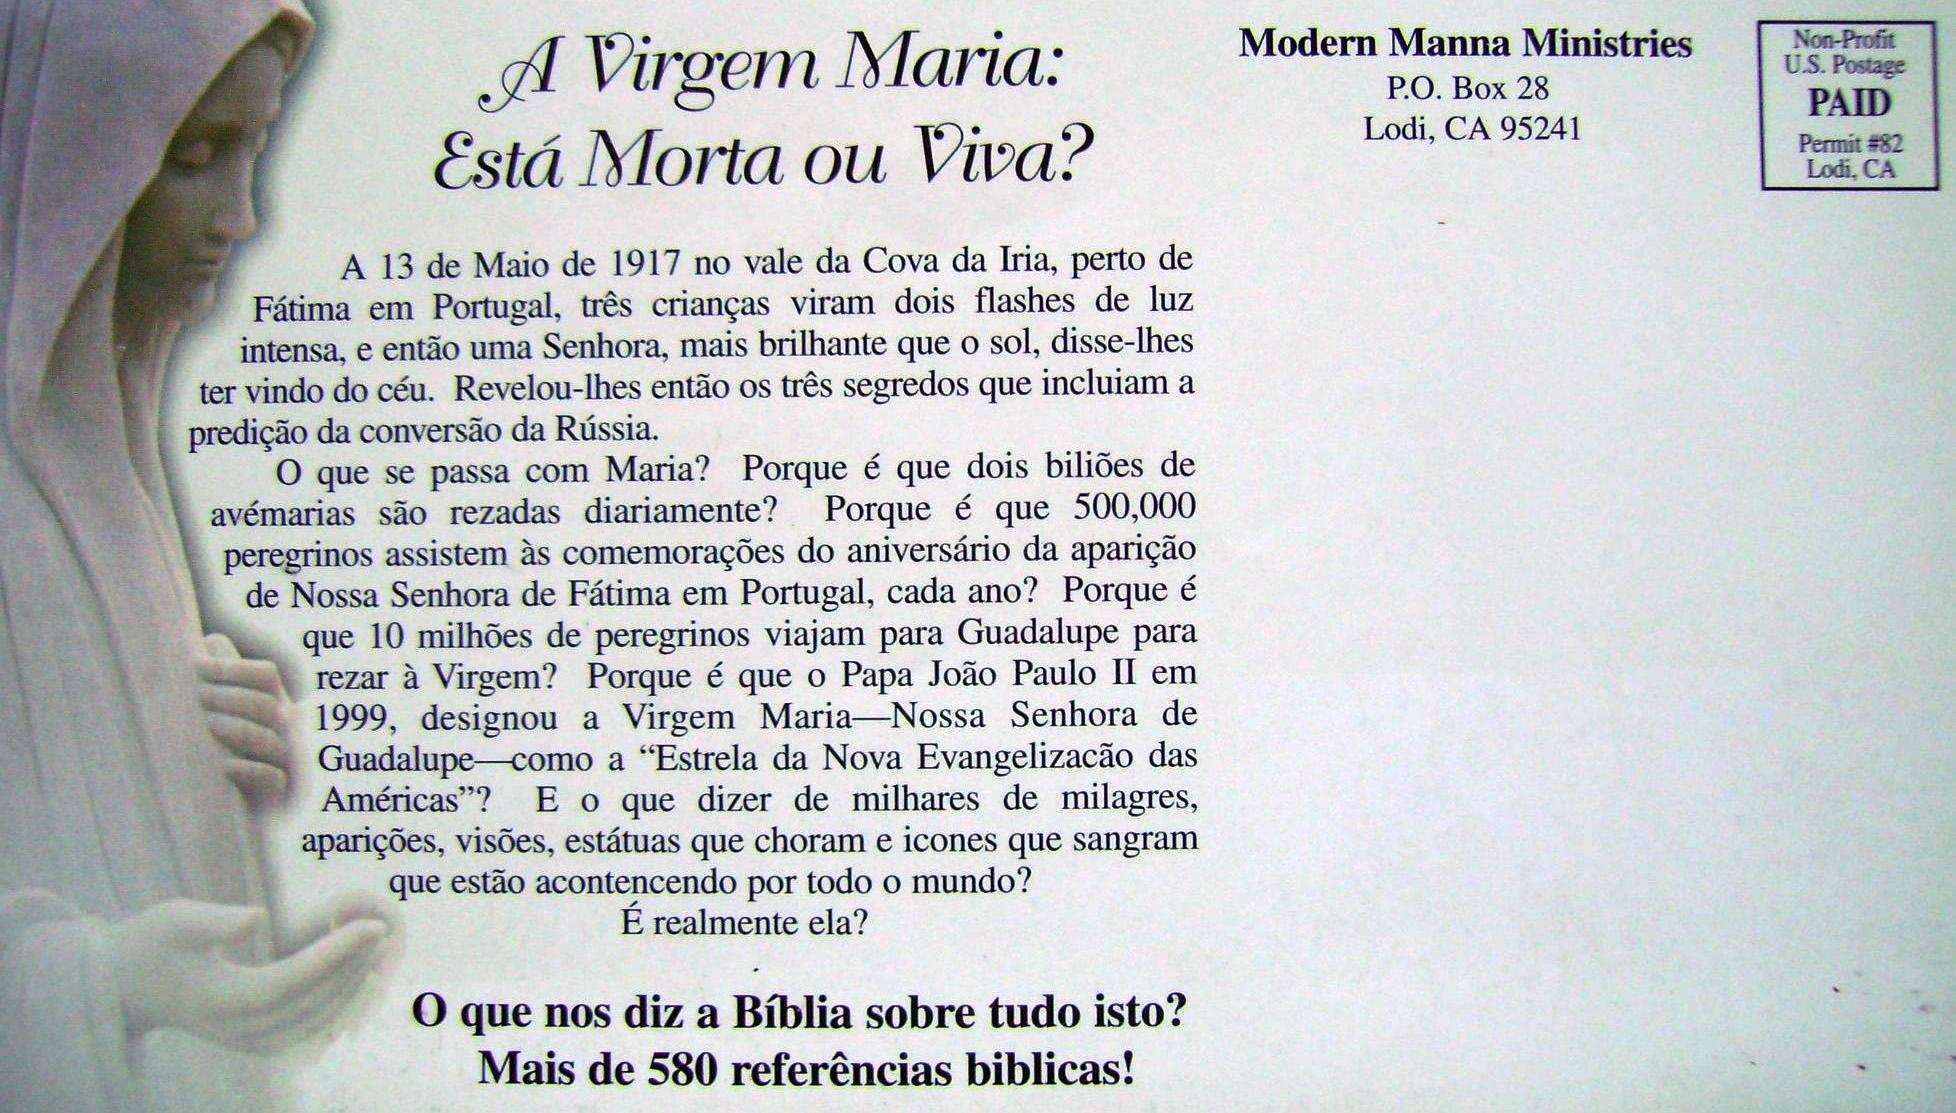 A Virgem Maria: Está Morta ou Viva? 1 Por DANNY VIERRA Publicado e distribuído gratuitamente por MODERN MANNA MINISTRIES 1997 Primeira edição em português.